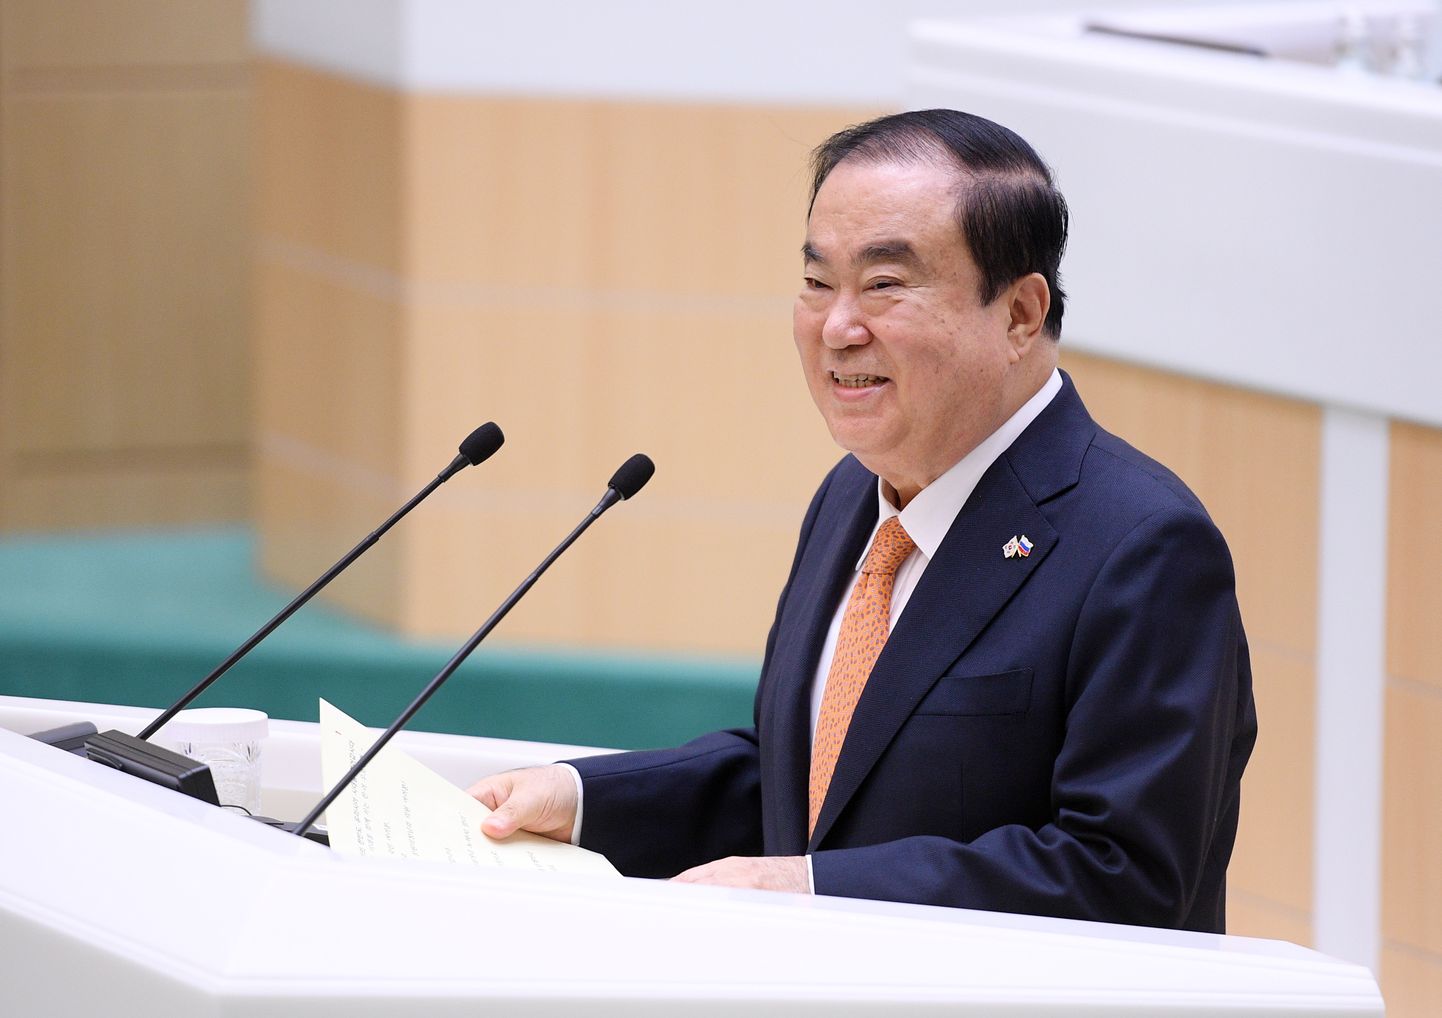 Lõuna-Korea parlamendi spiiker Moon Hee-sang 29. mail Moskvas föderatsiooninõukogu ees kõnet pidamas.